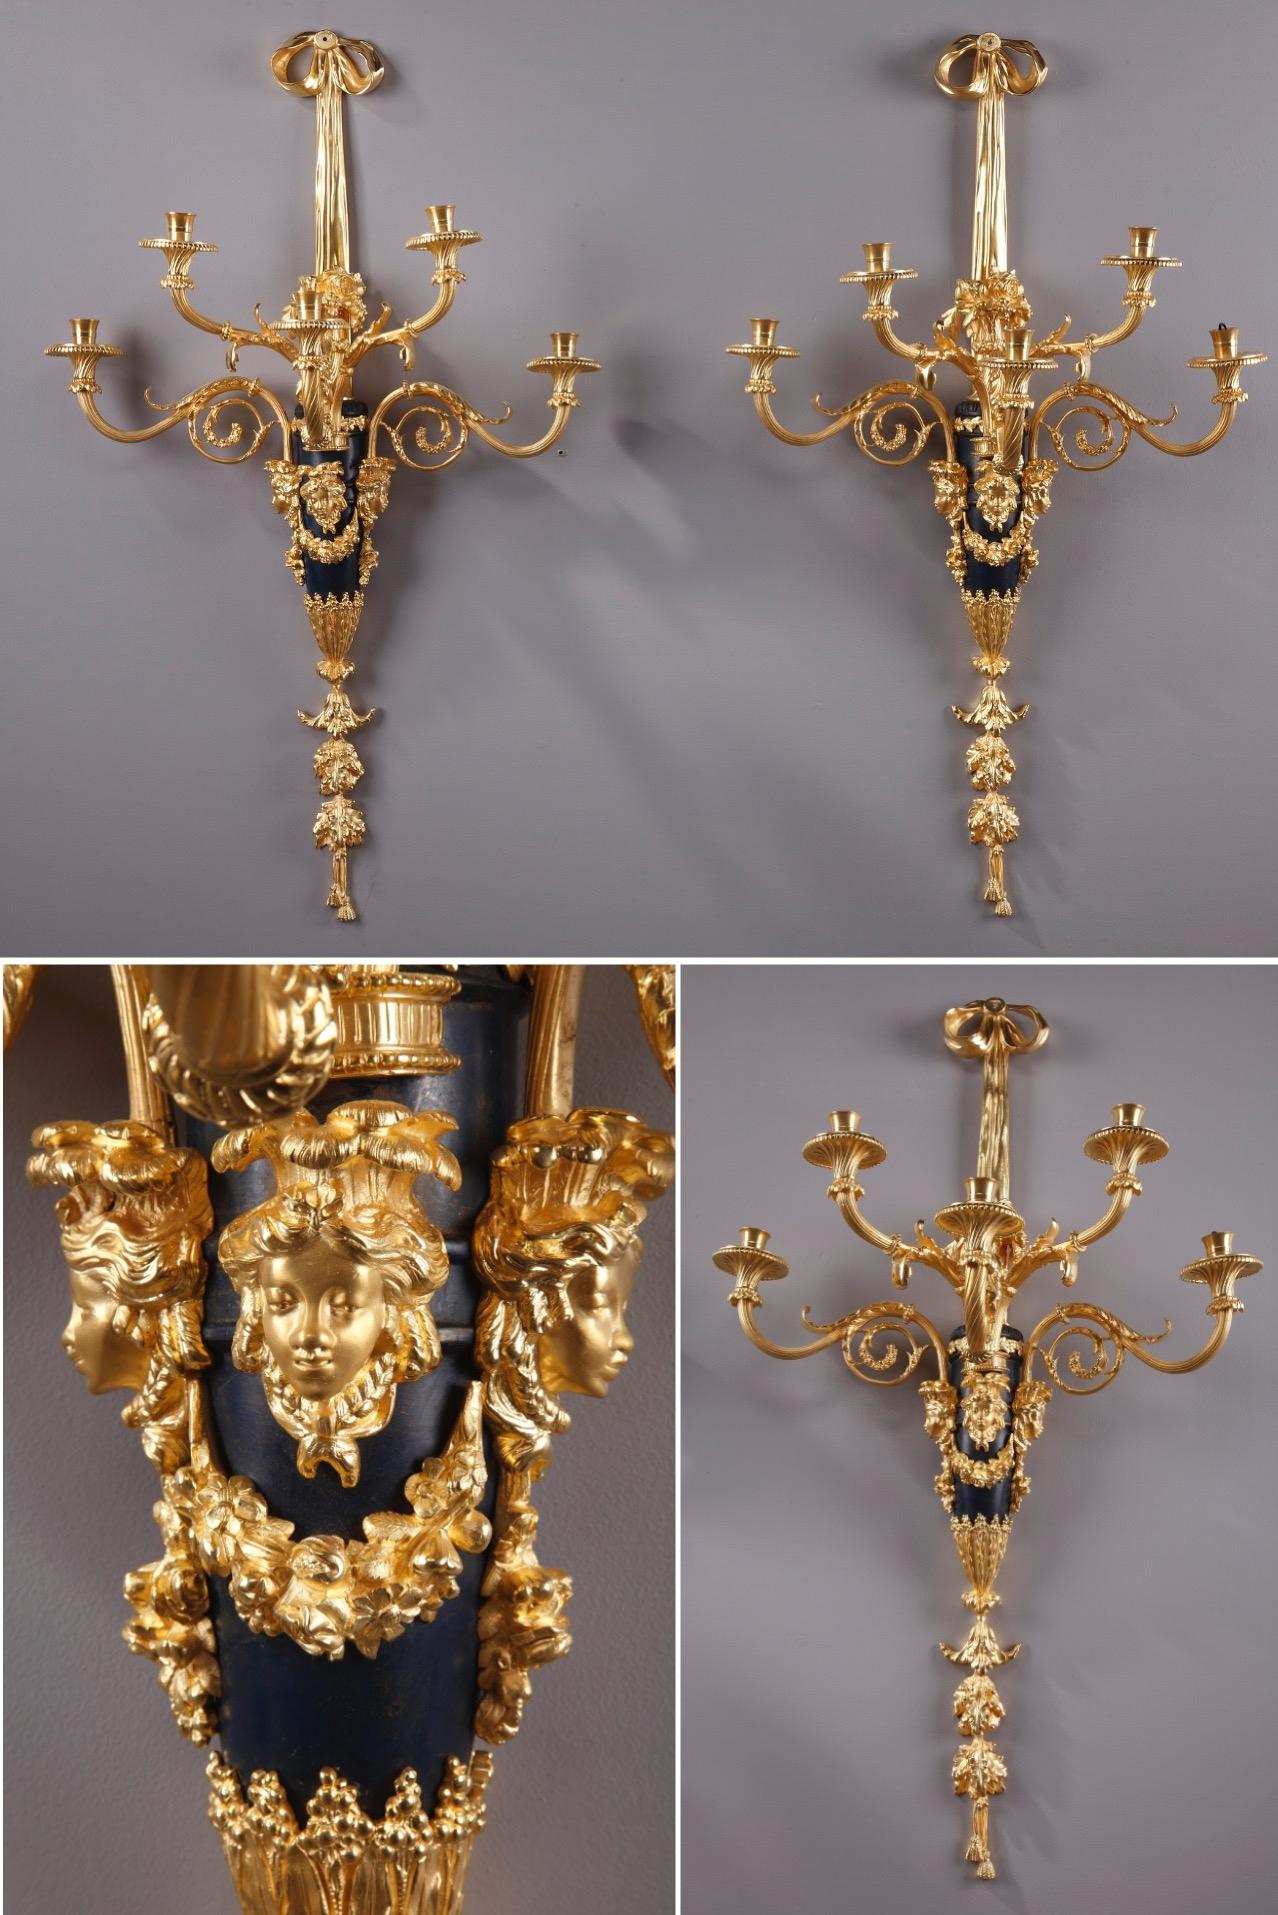 Dieses außergewöhnliche Paar vergoldeter und patinierter Bronzewandleuchter ist wunderschön im Louis XVI-Stil gestaltet. Die monumentalen und opulenten 5-flammigen Leuchter tragen ein klassisches Dekor aus verschlungenen Rillen, Akanthus und